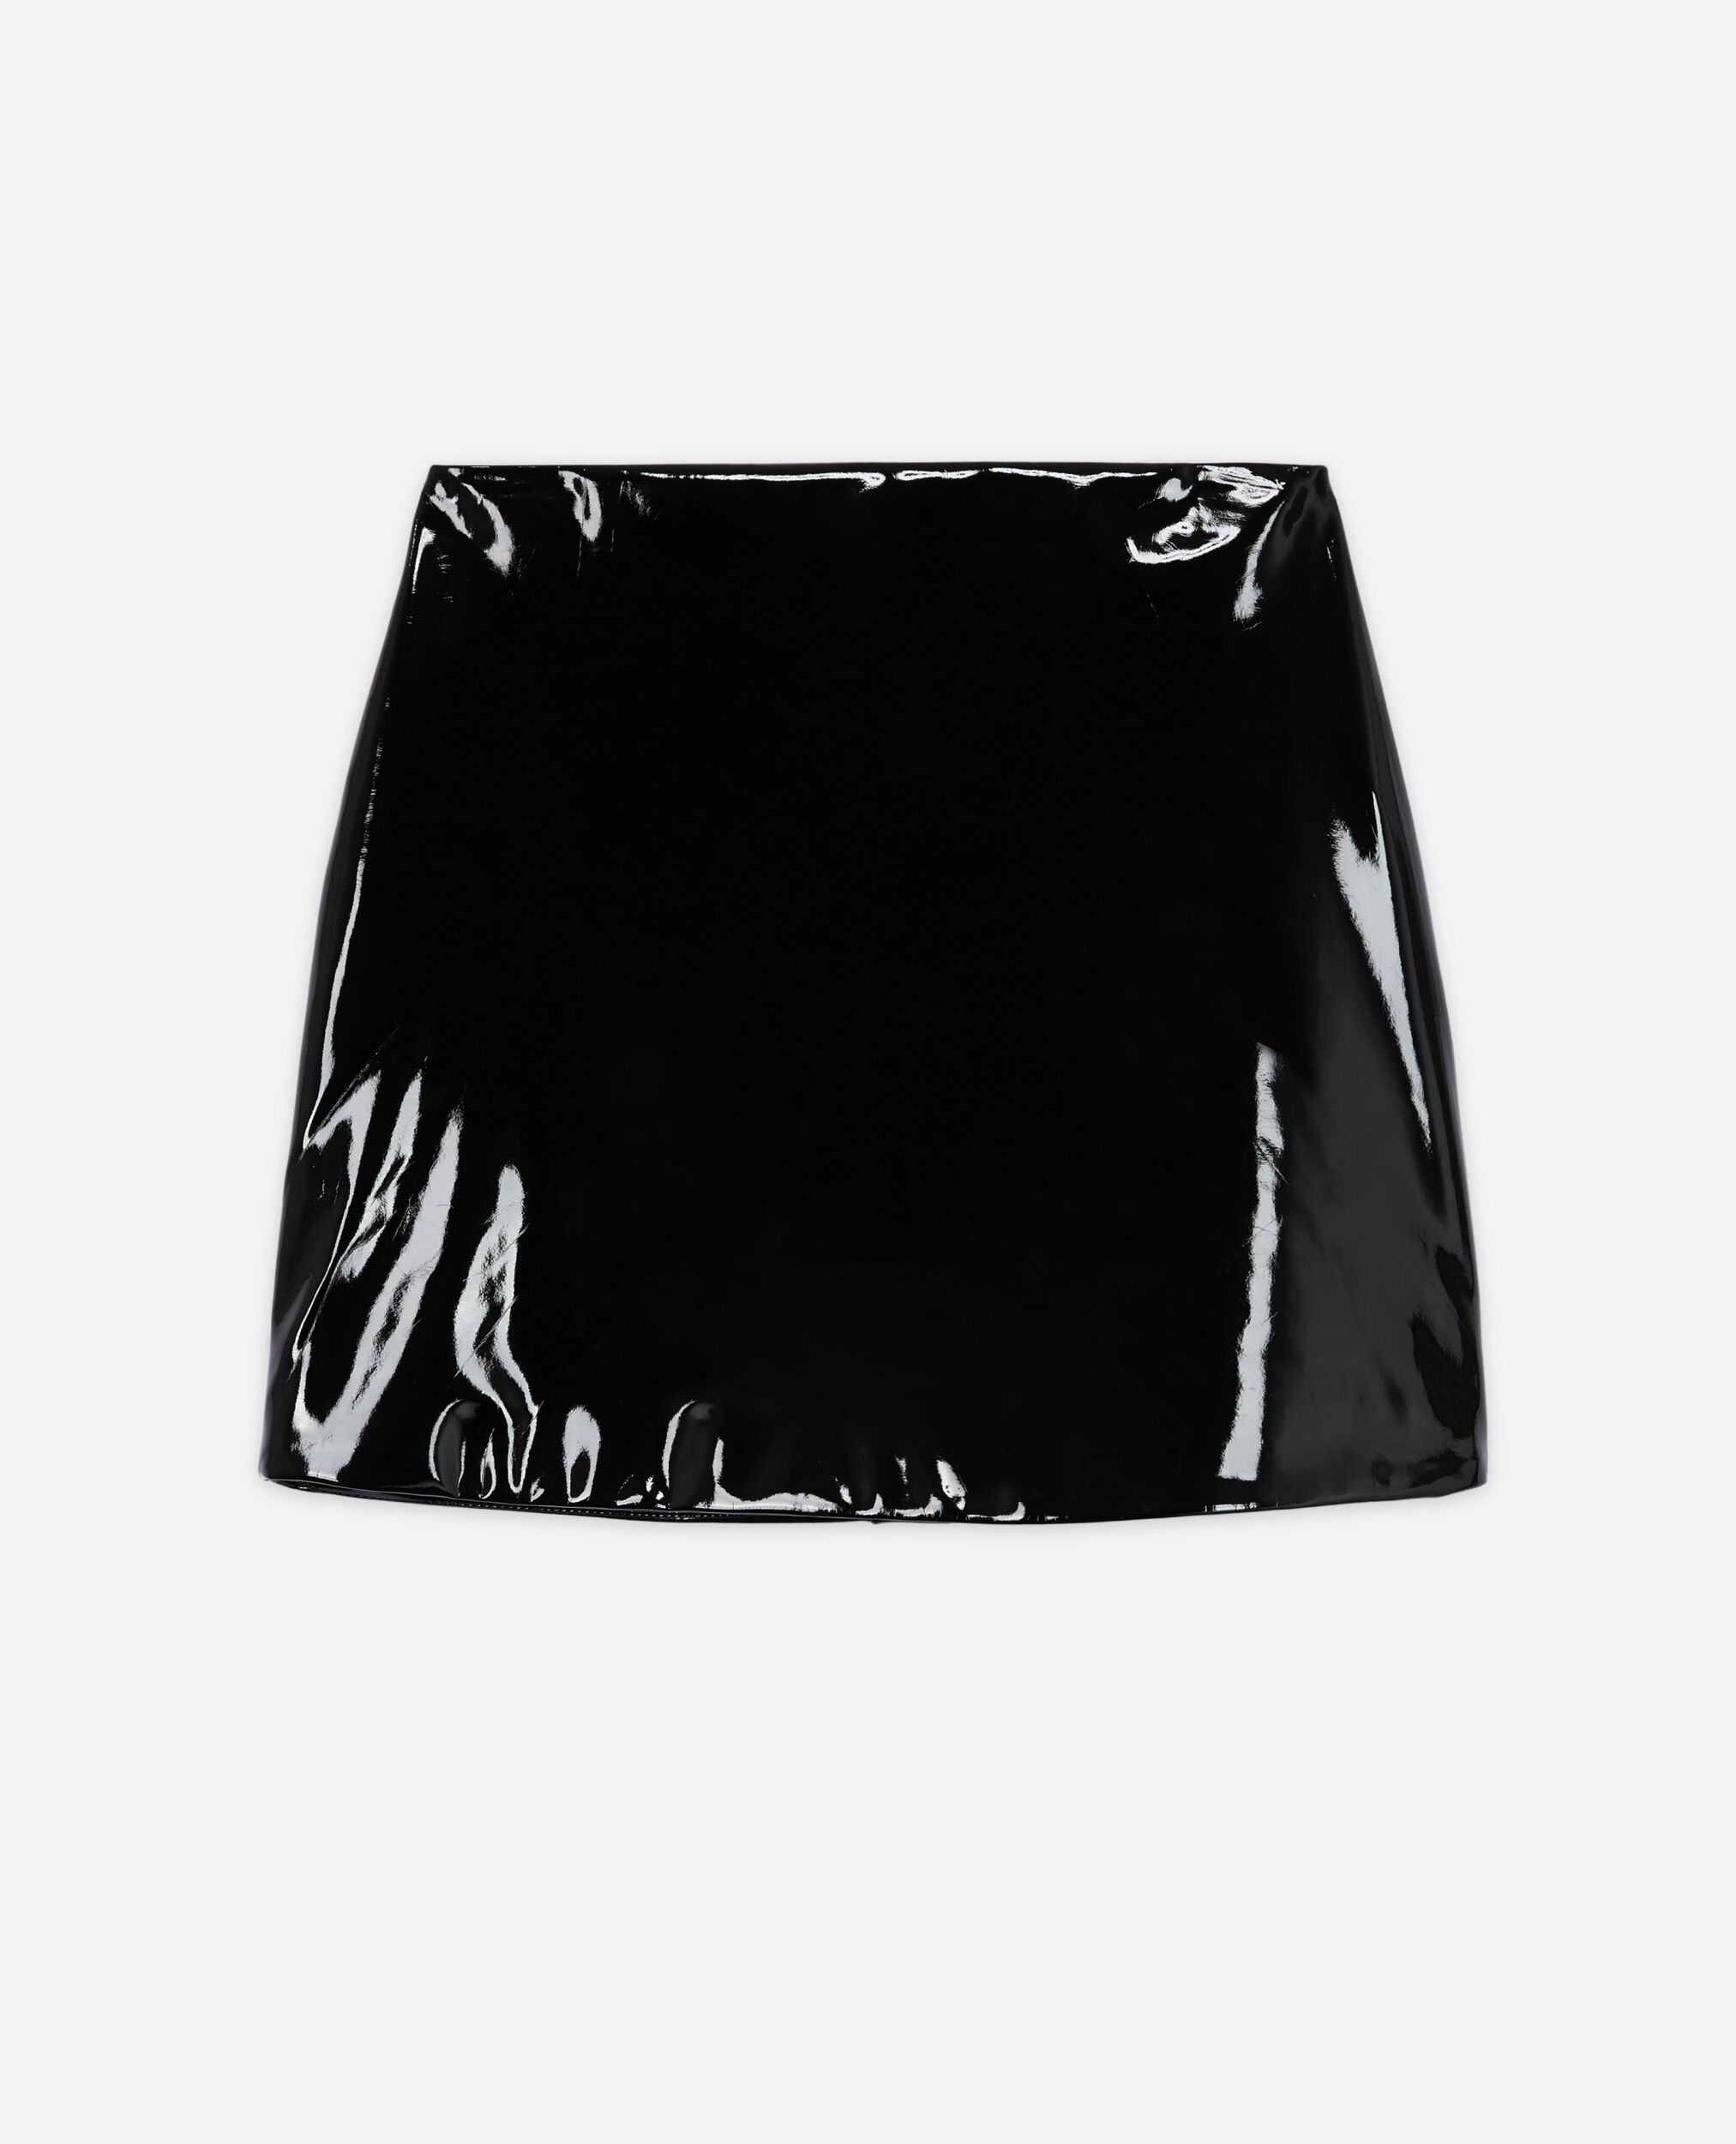 Short black vinyl skirt | The - US